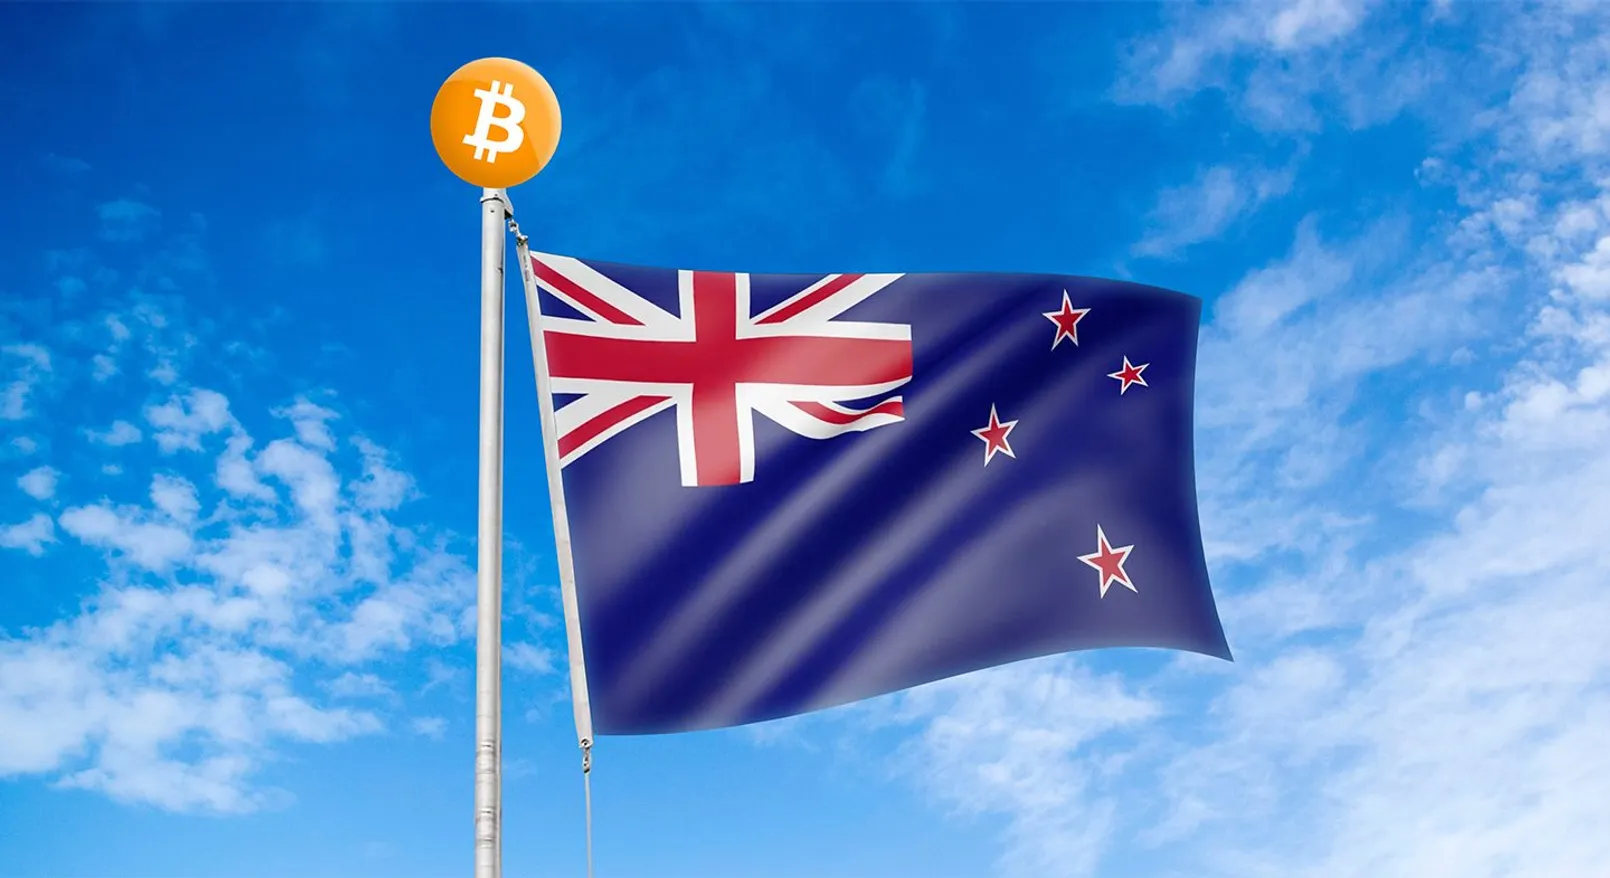 Newzealand Bitcoin.jpg